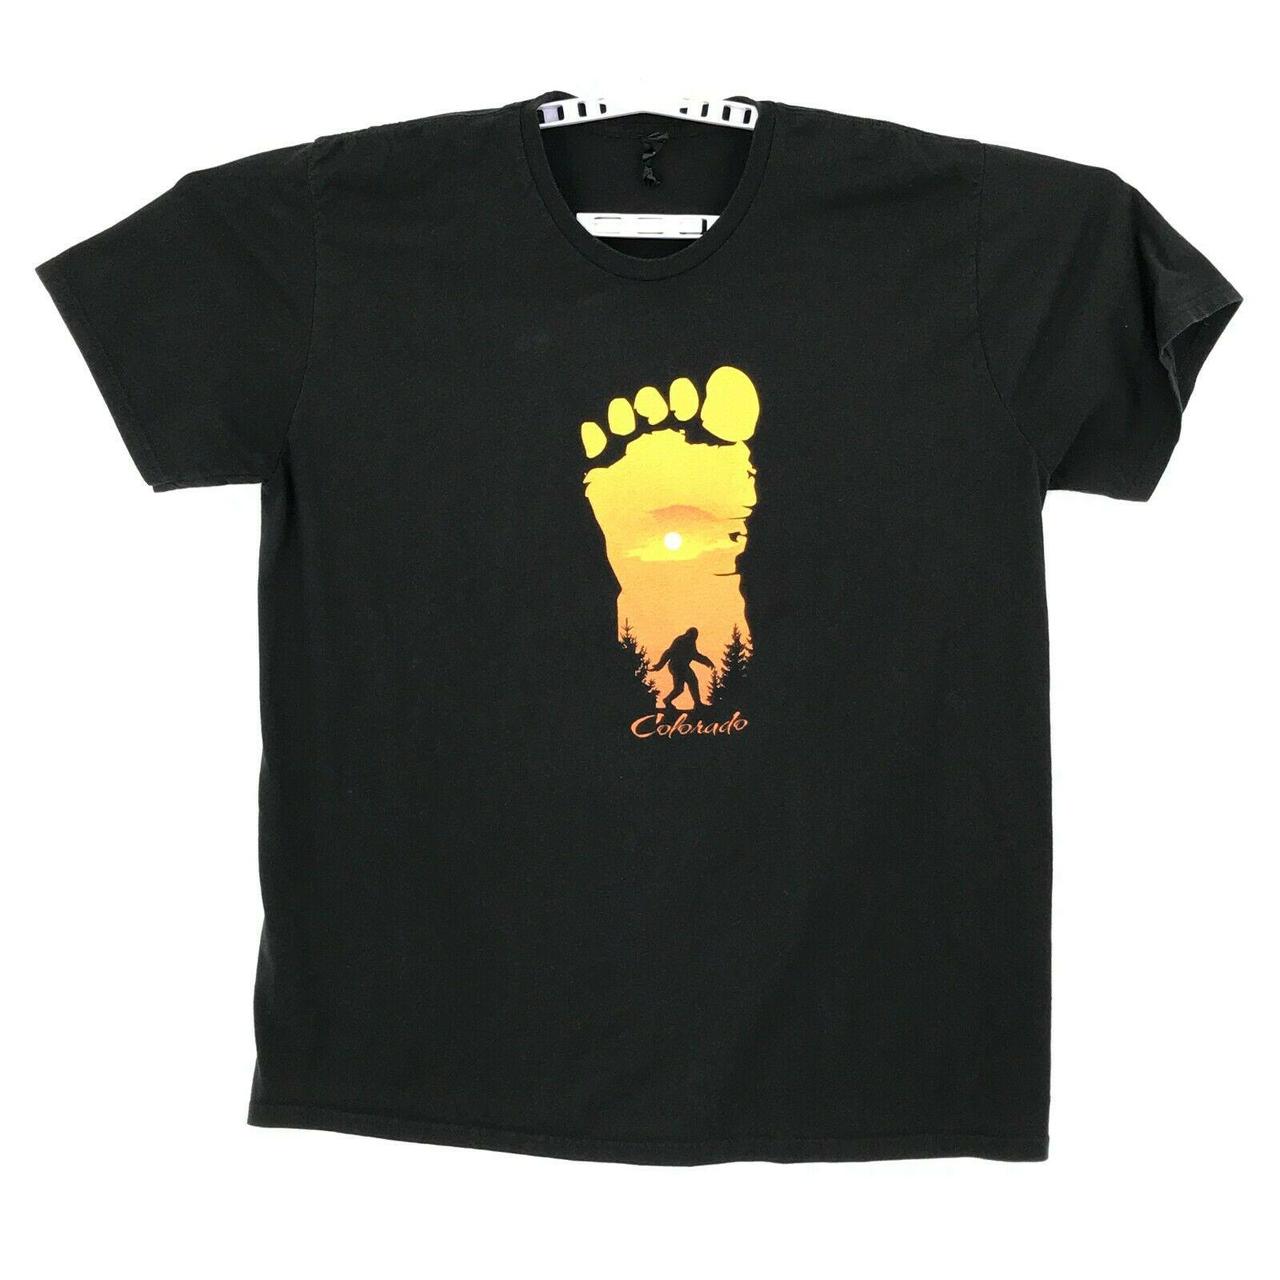 Product Image 1 - Colorado Bigfoot T-Shirt Adult XL